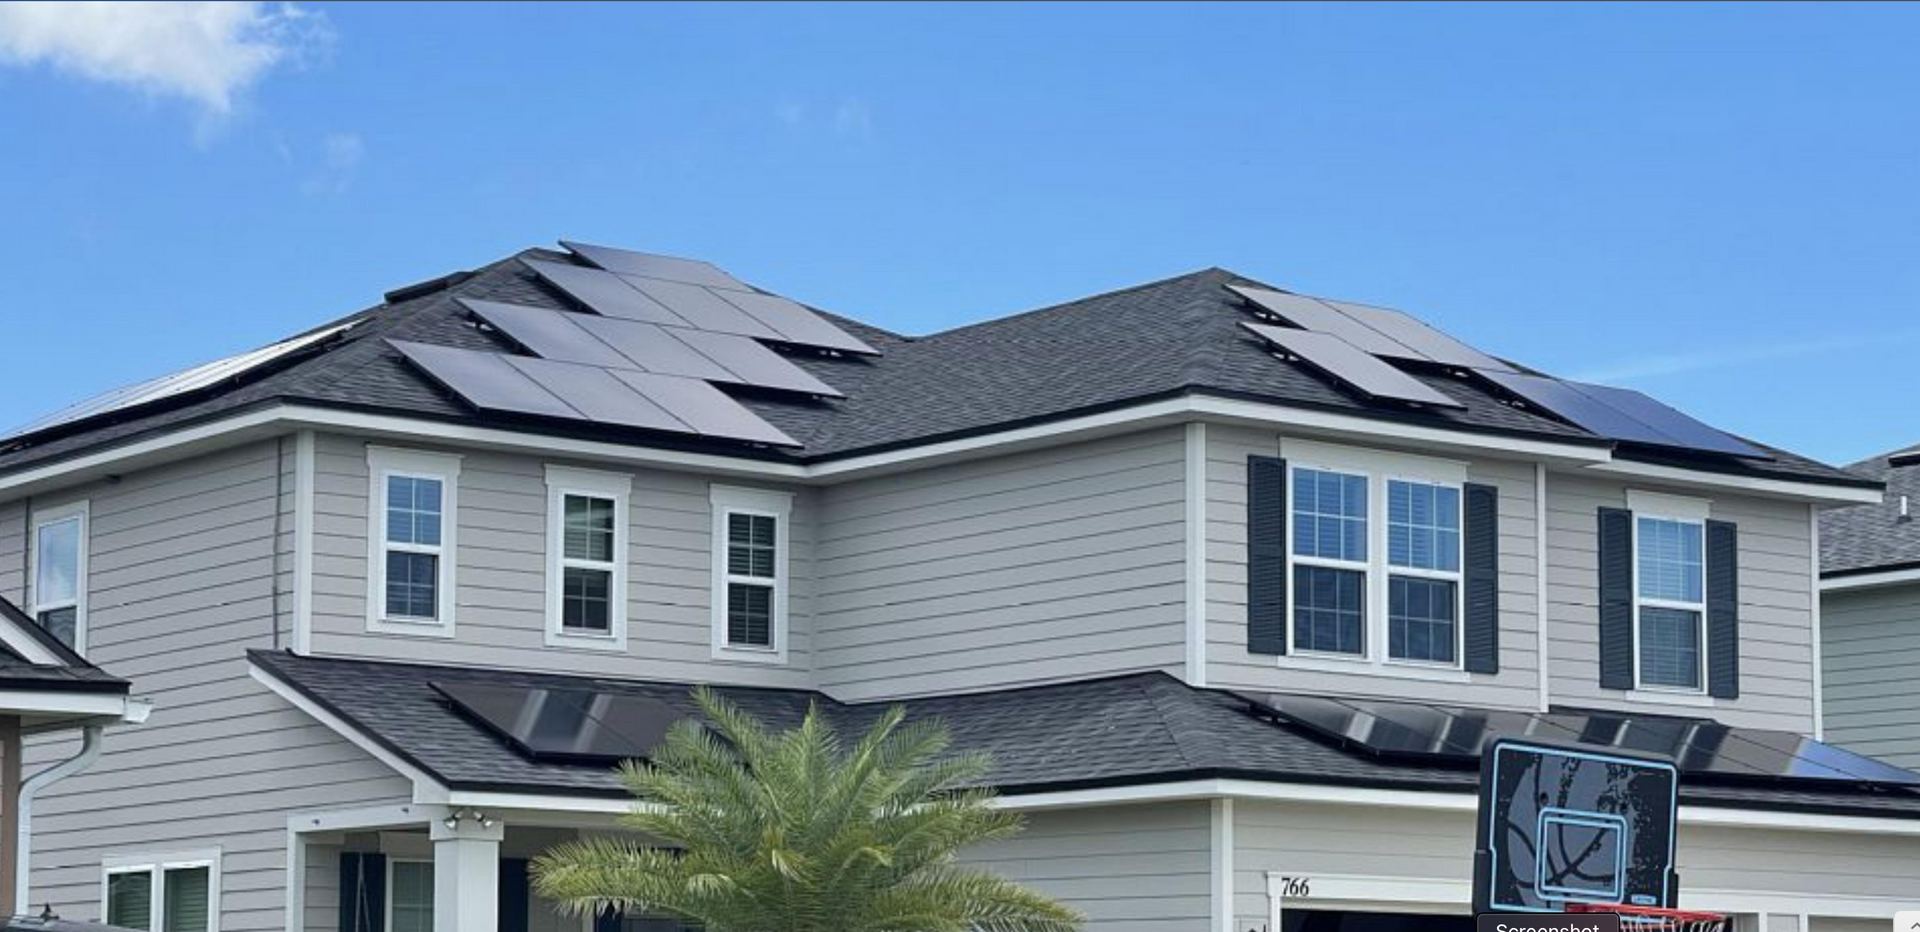 Solar Companies in Dallas provide the best solar contractors in Texas